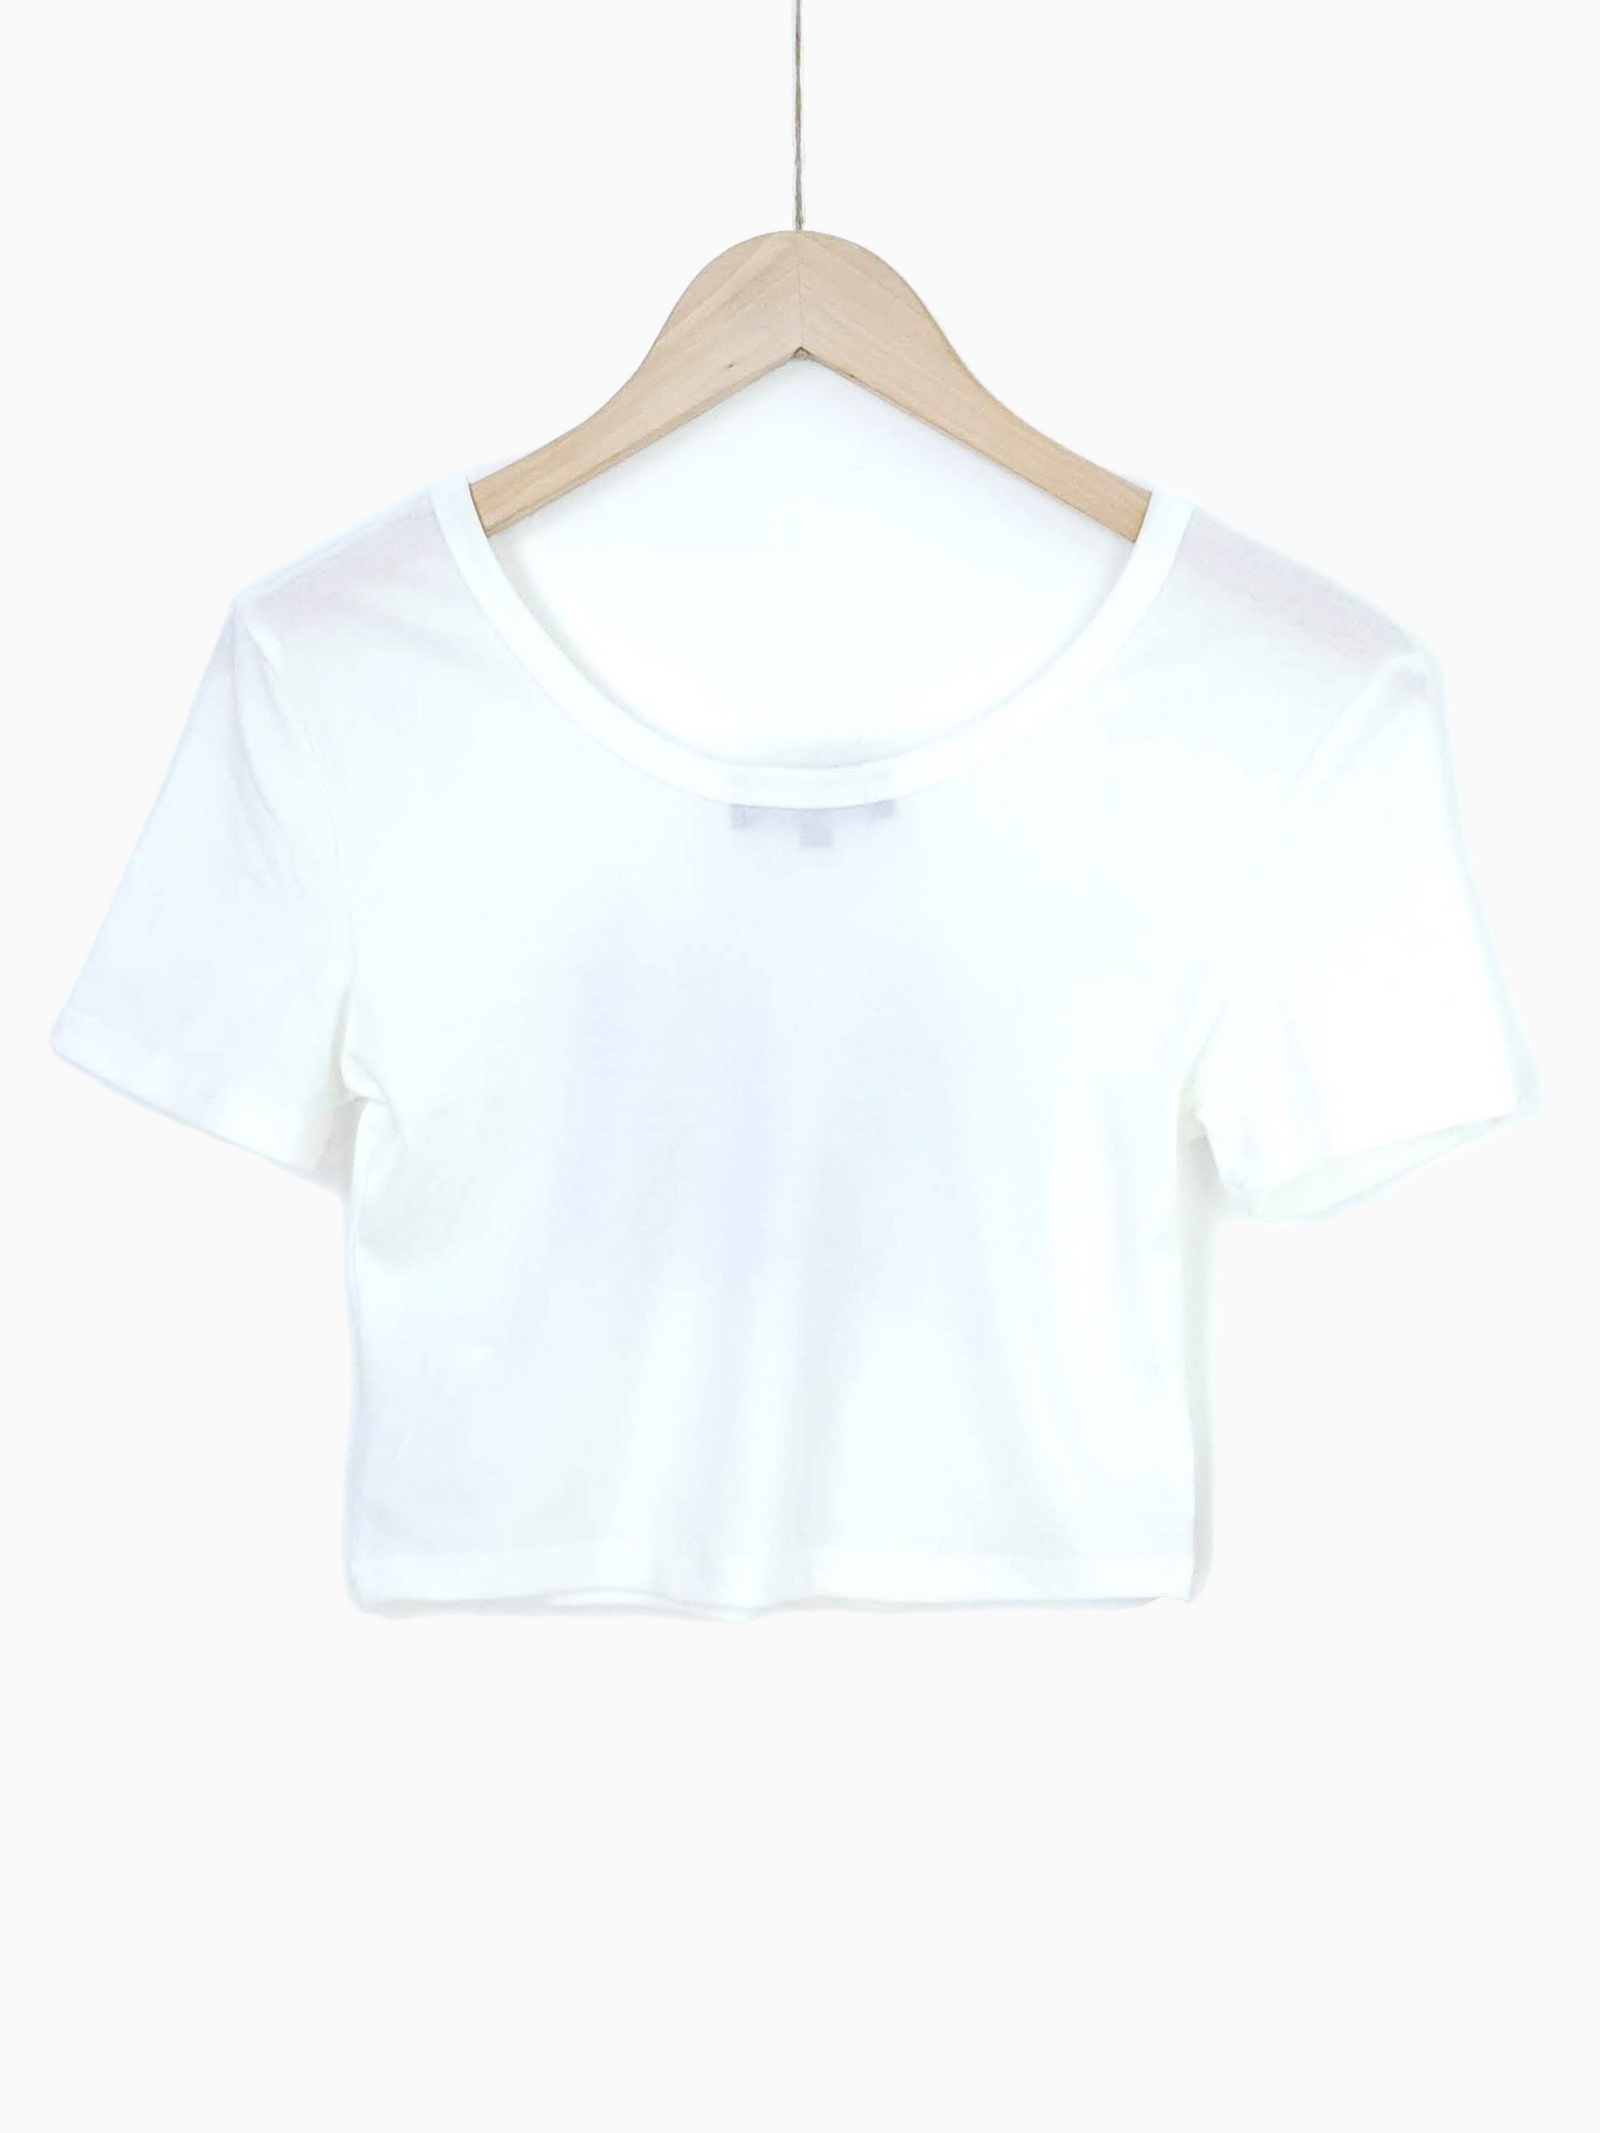 ANYA | Cropped Graphic Tshirt | White